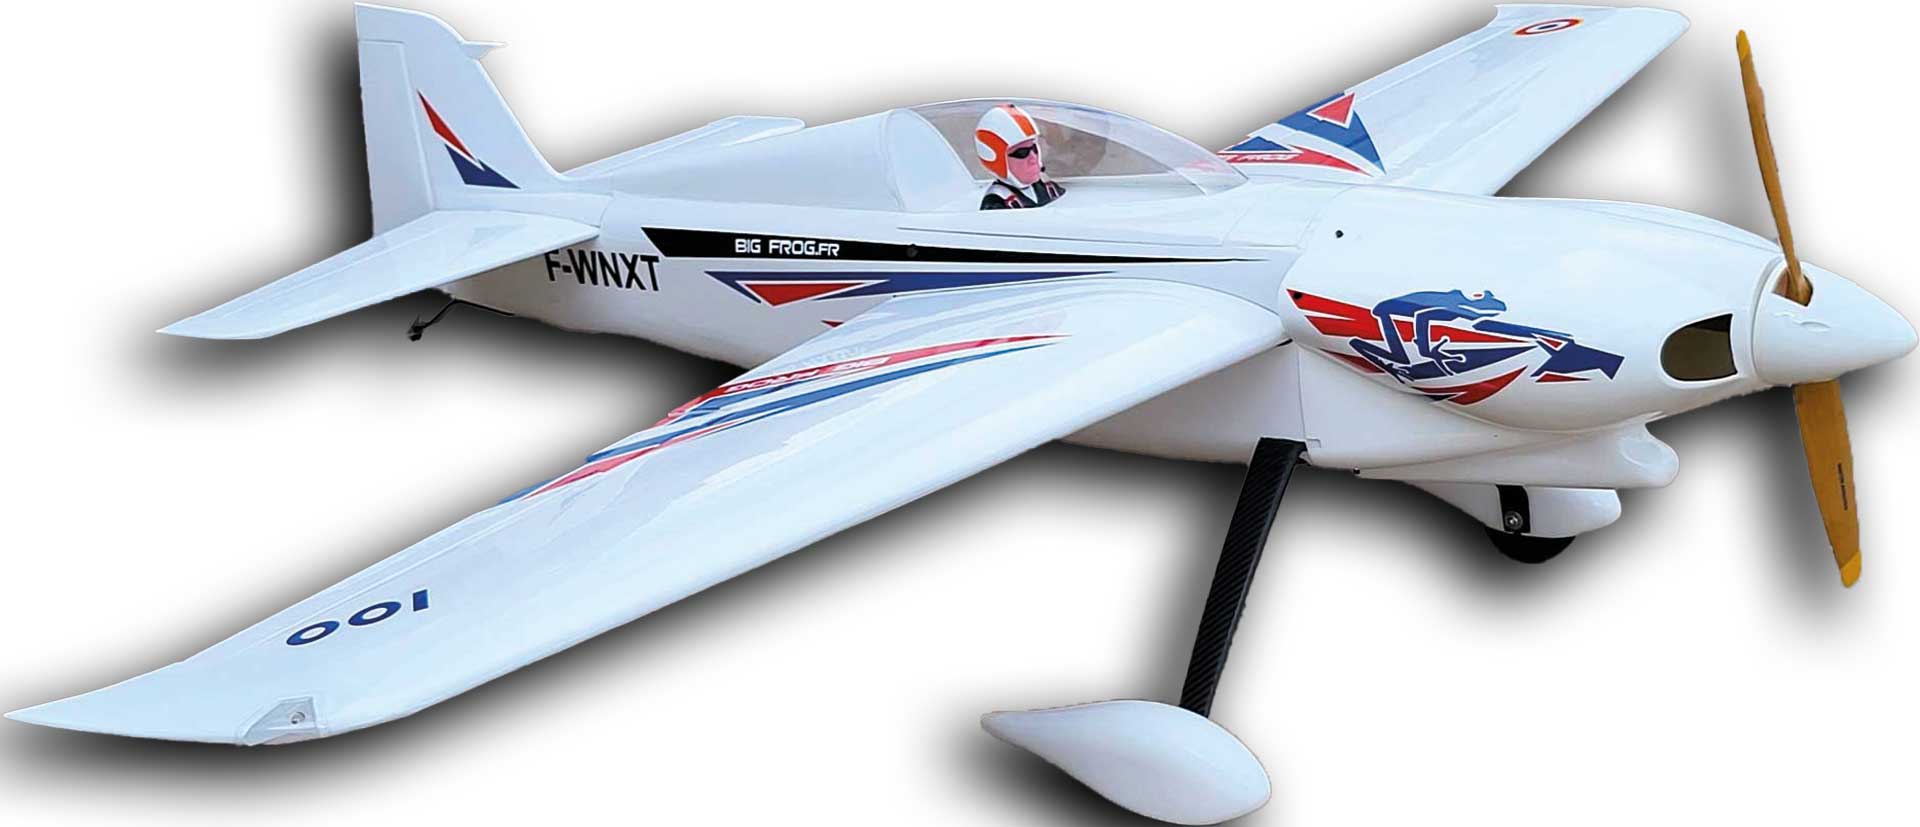 Seagull Models ( SG-Models ) Nemesis NXT F1 Air Race "White 80.5" 50-60cc ARF